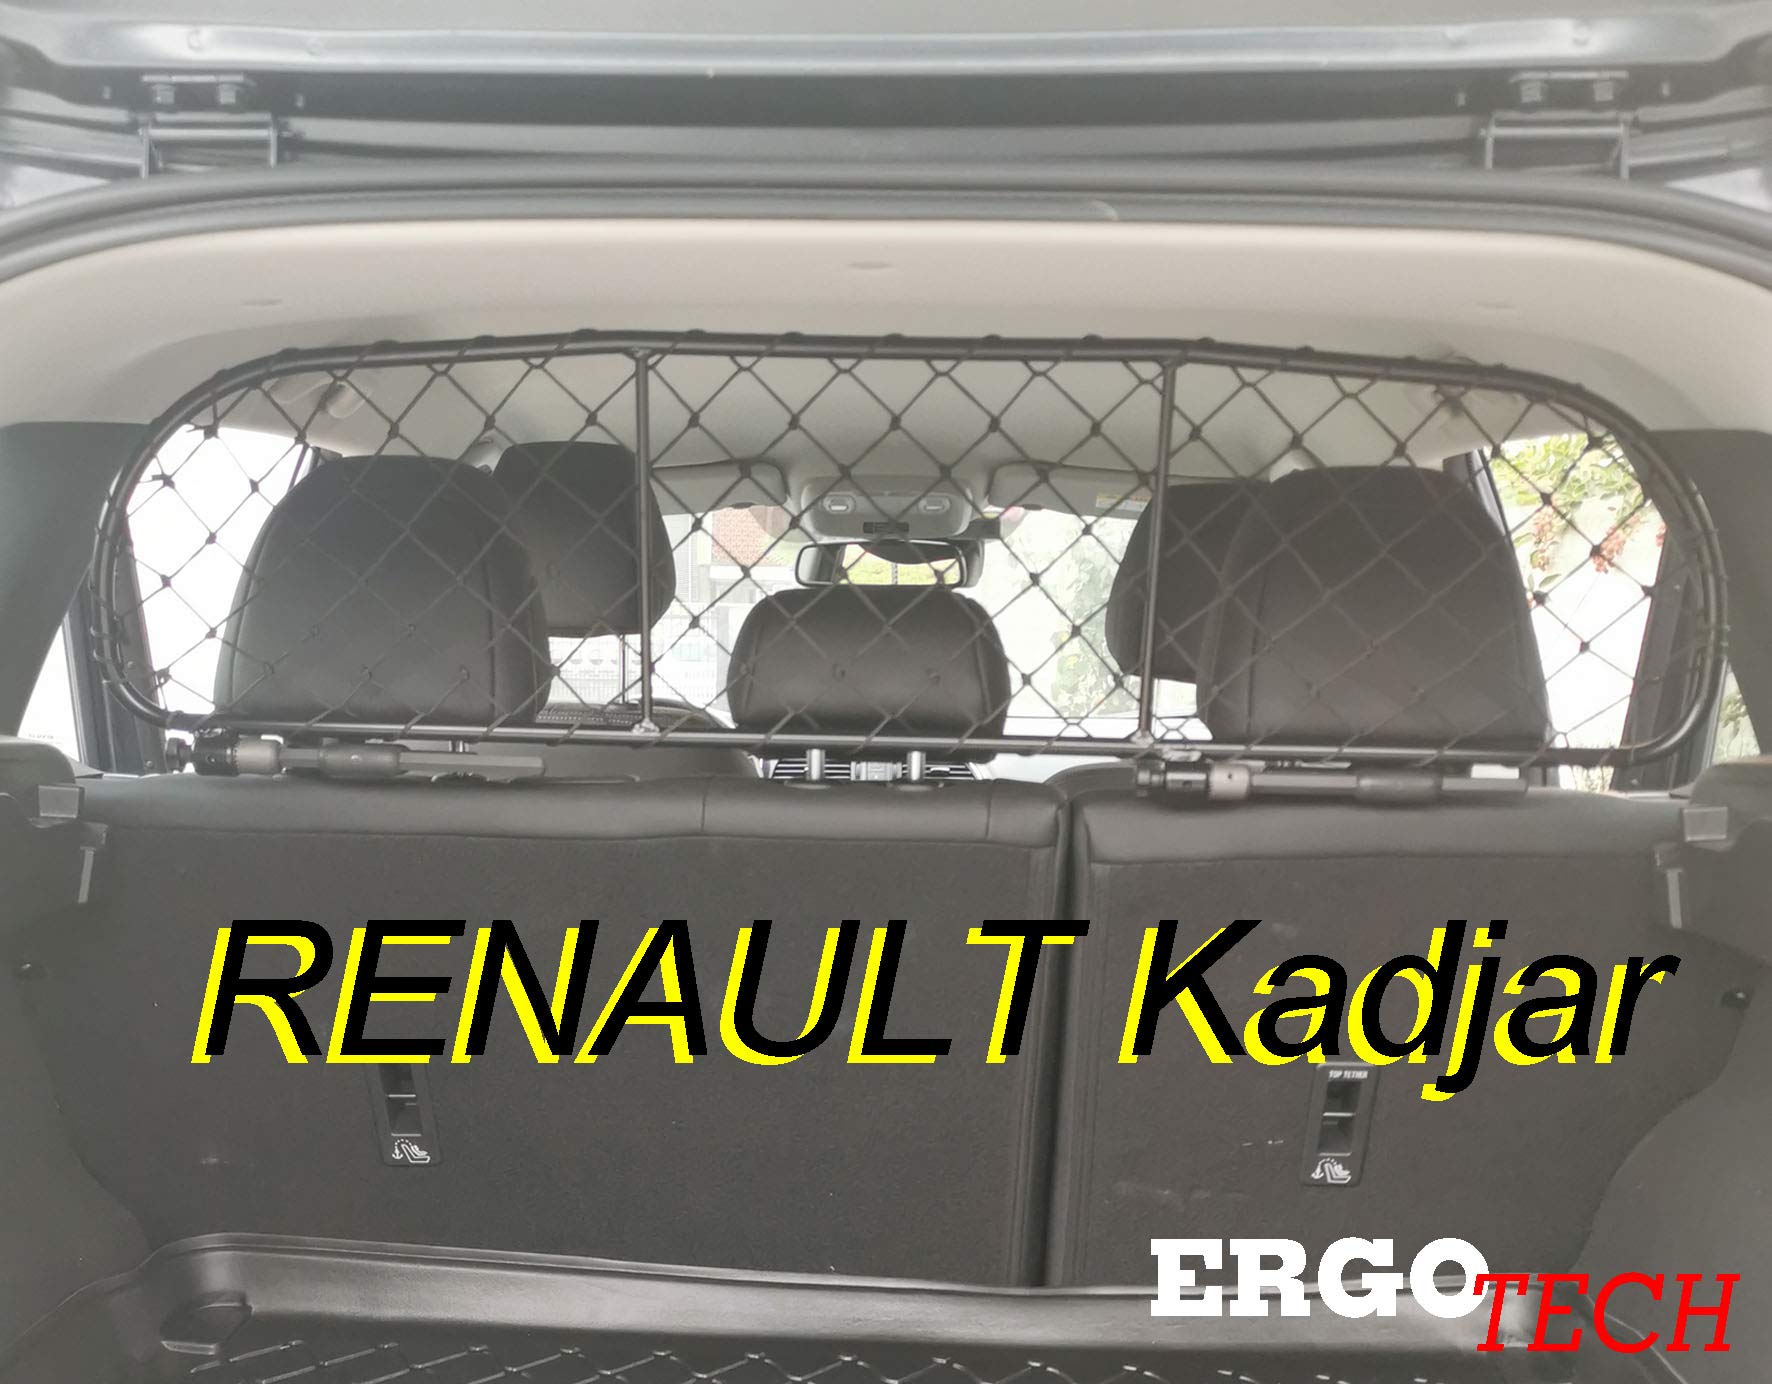 ERGOTECH Trennnetz Trenngitter kompatibel mit Renault Kadjar, RDA65-S, für Hunde und Gepäck